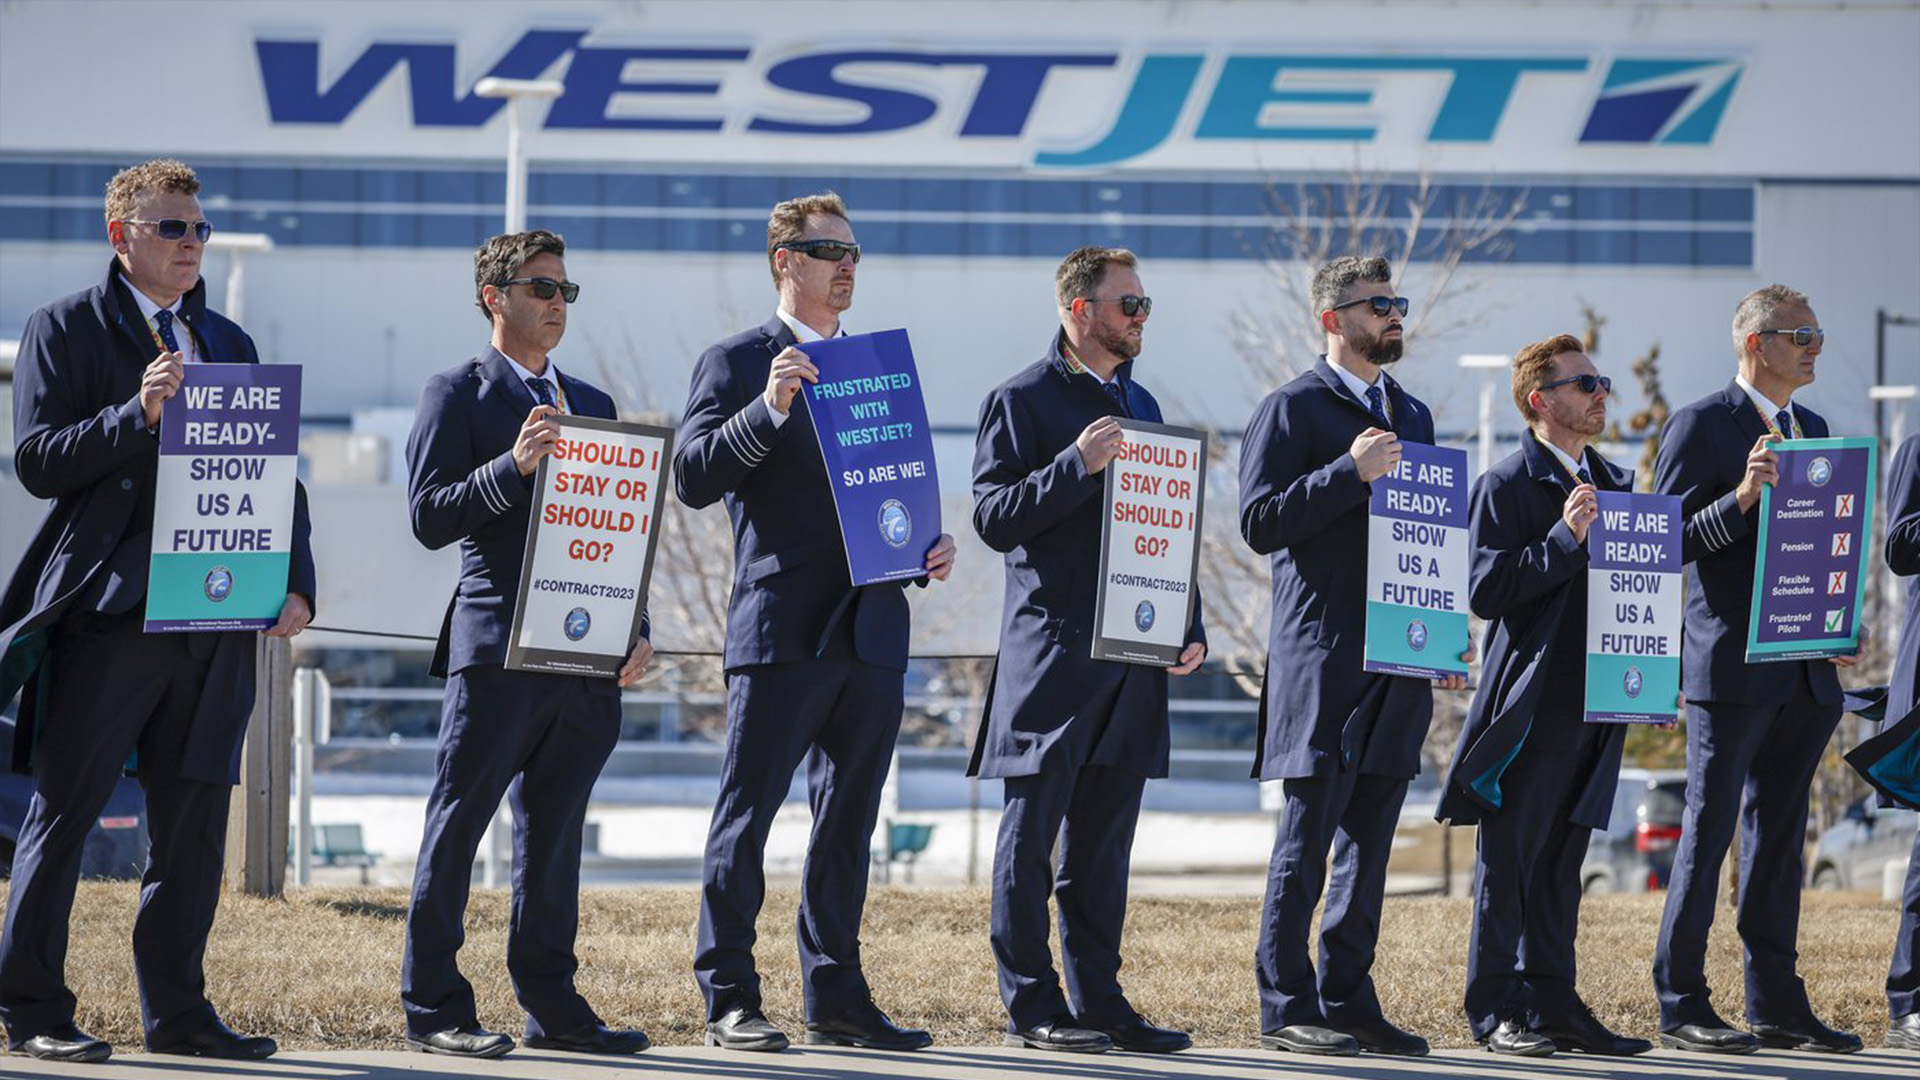 Les pilotes du transporteur aérien WestJet ont émis un préavis de grève de 72 heures à l'entreprise et au gouvernement, selon le syndicat qui les représente. 